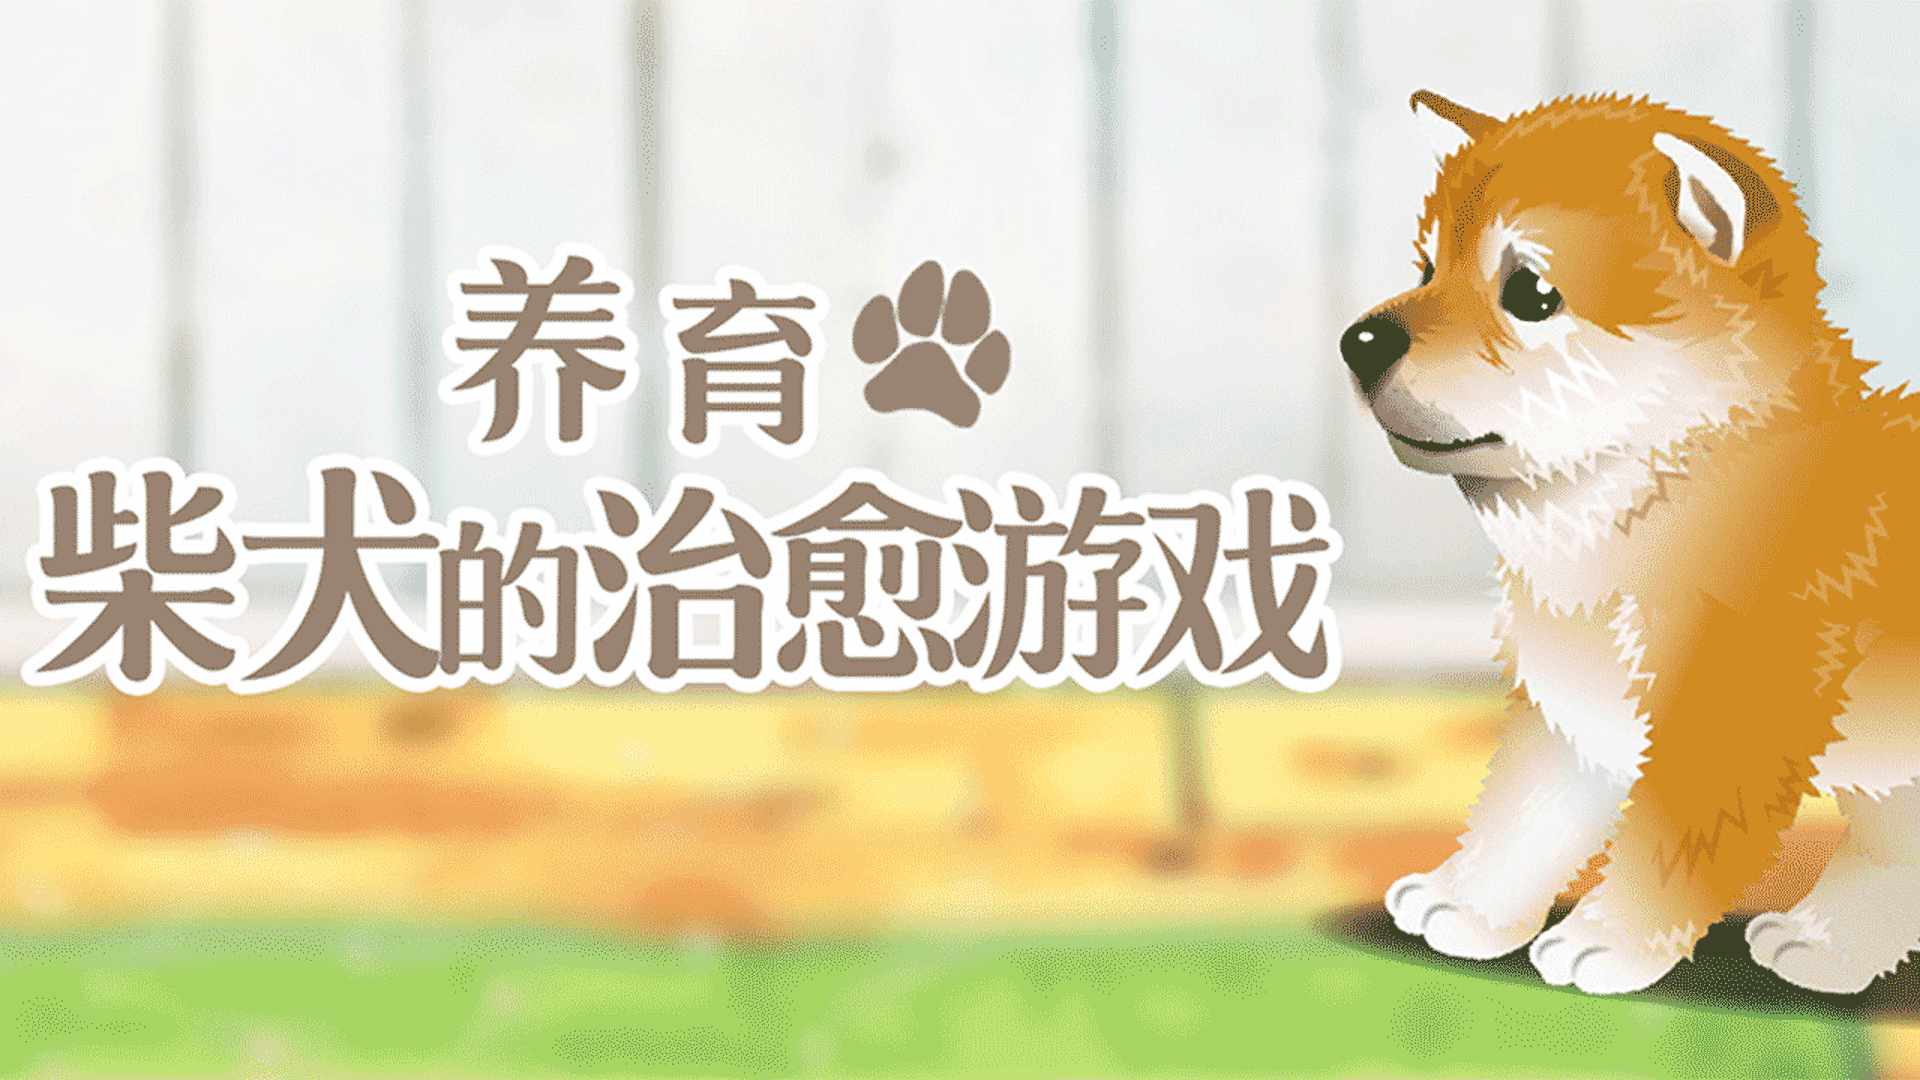 Banner of Un gioco curativo per allevare uno Shiba Inu 